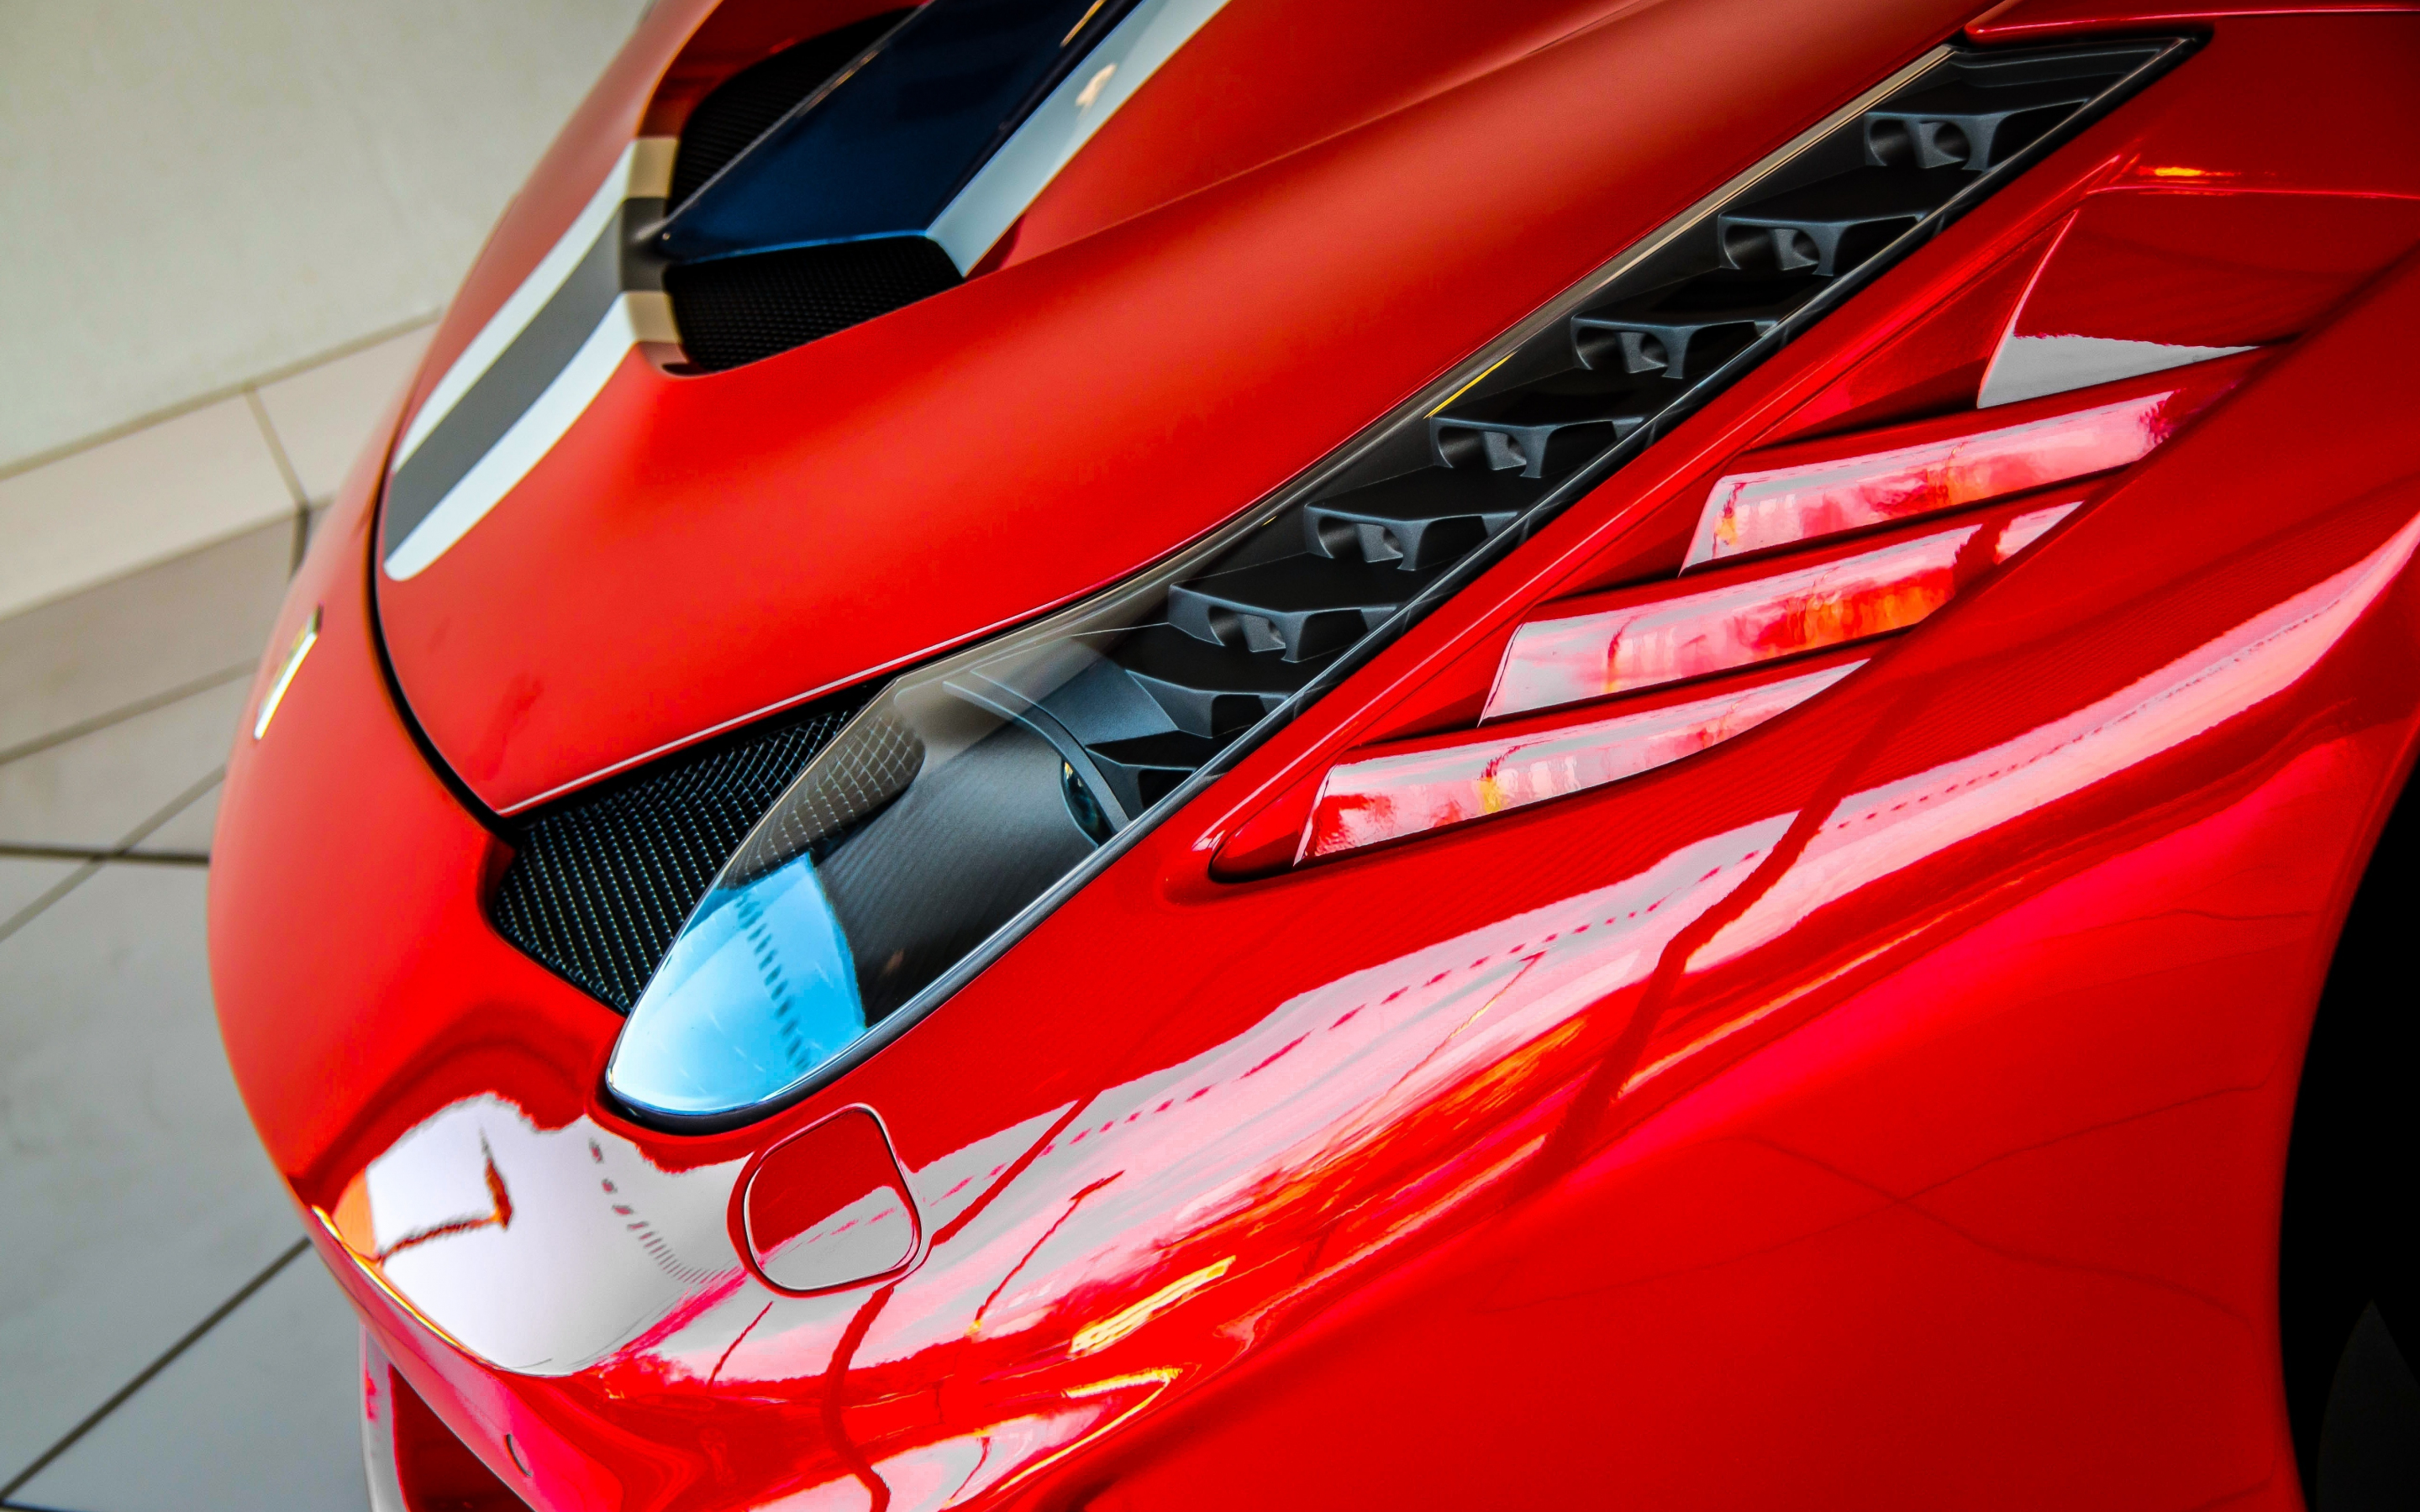 Headlight, Ferrari 458, 2880x1800 wallpaper